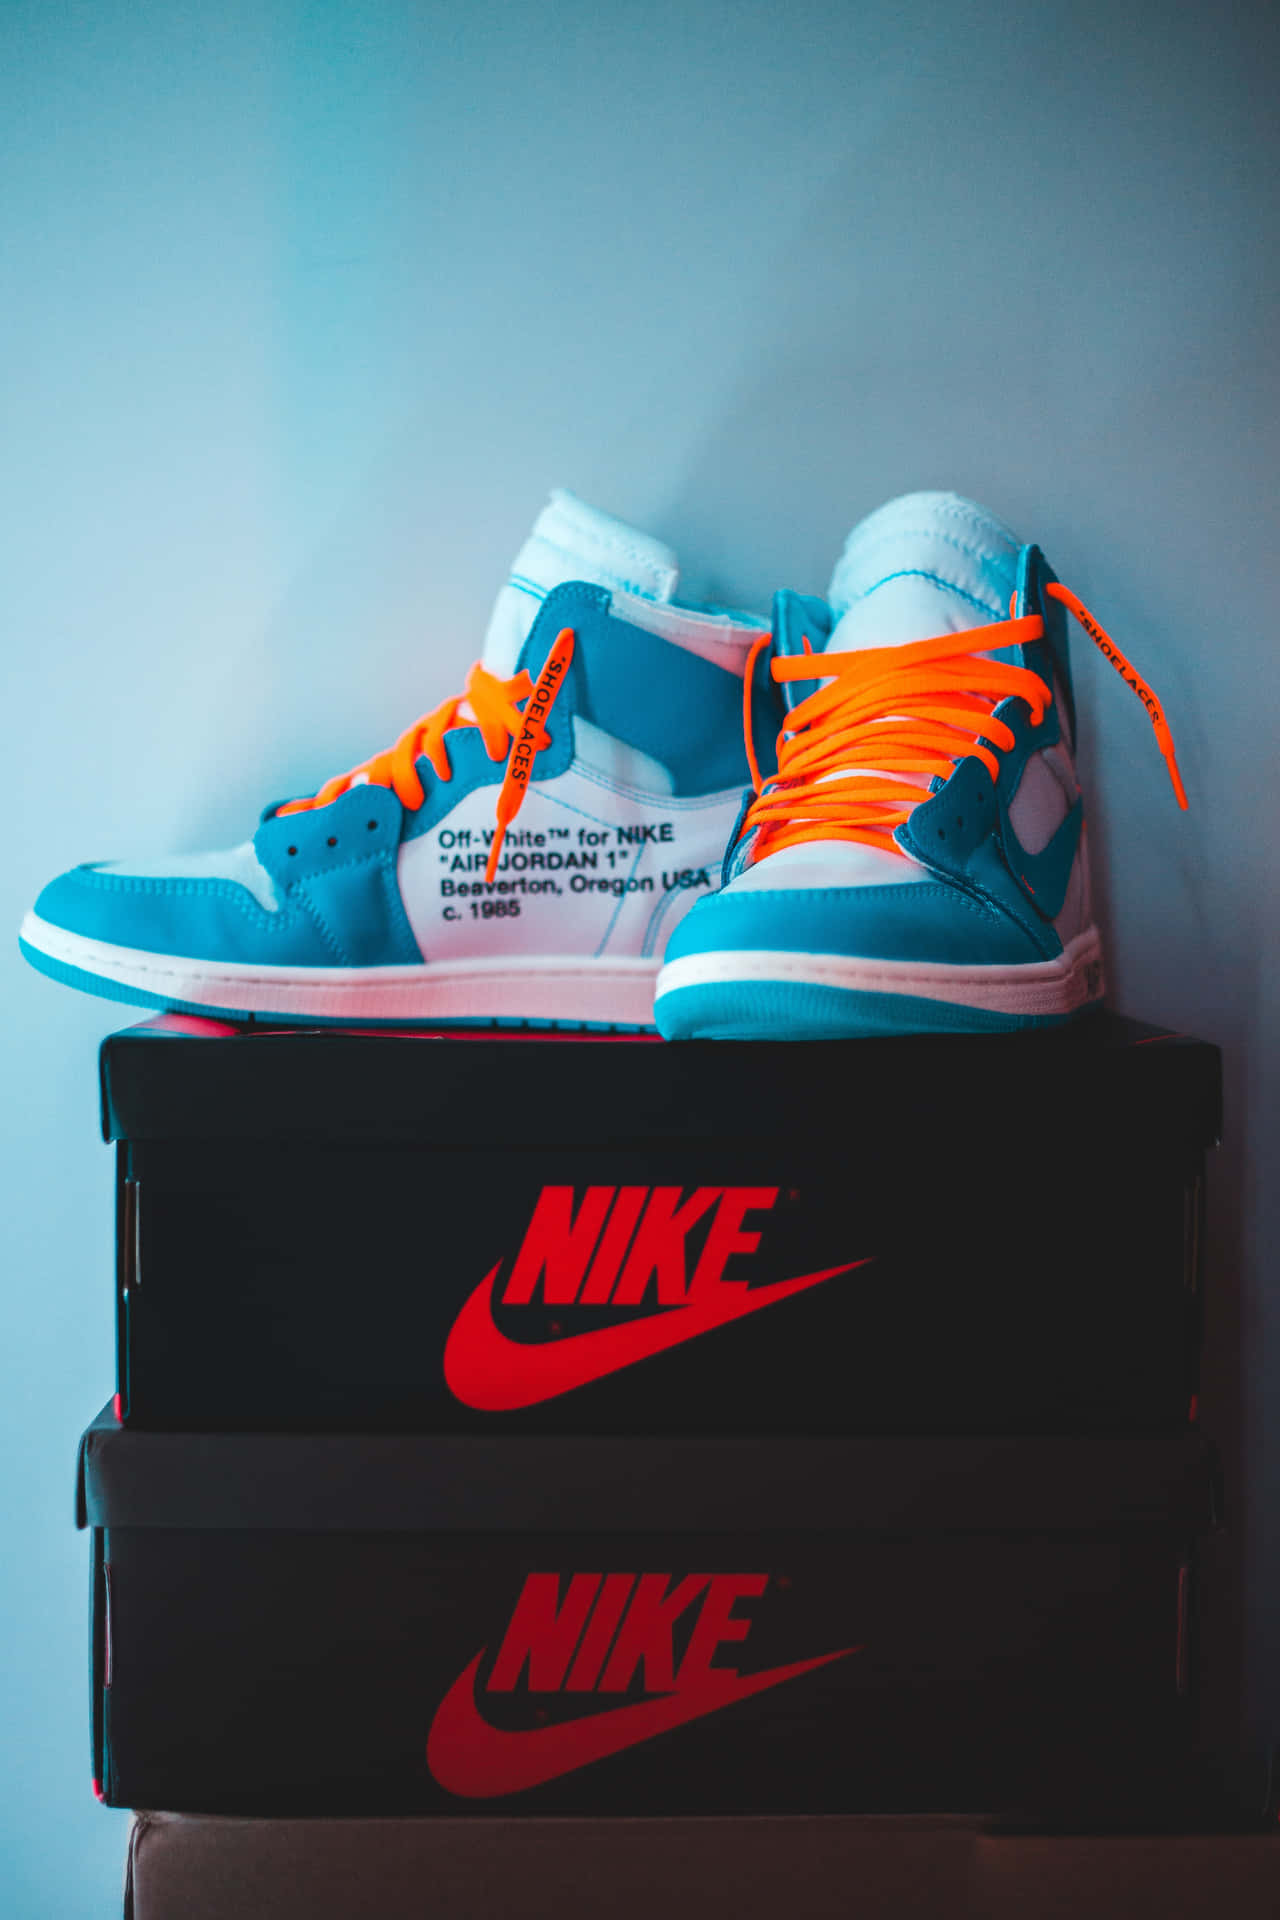 Einpaar Air Jordan 1 Mid Sneakers Auf Einer Box. Wallpaper